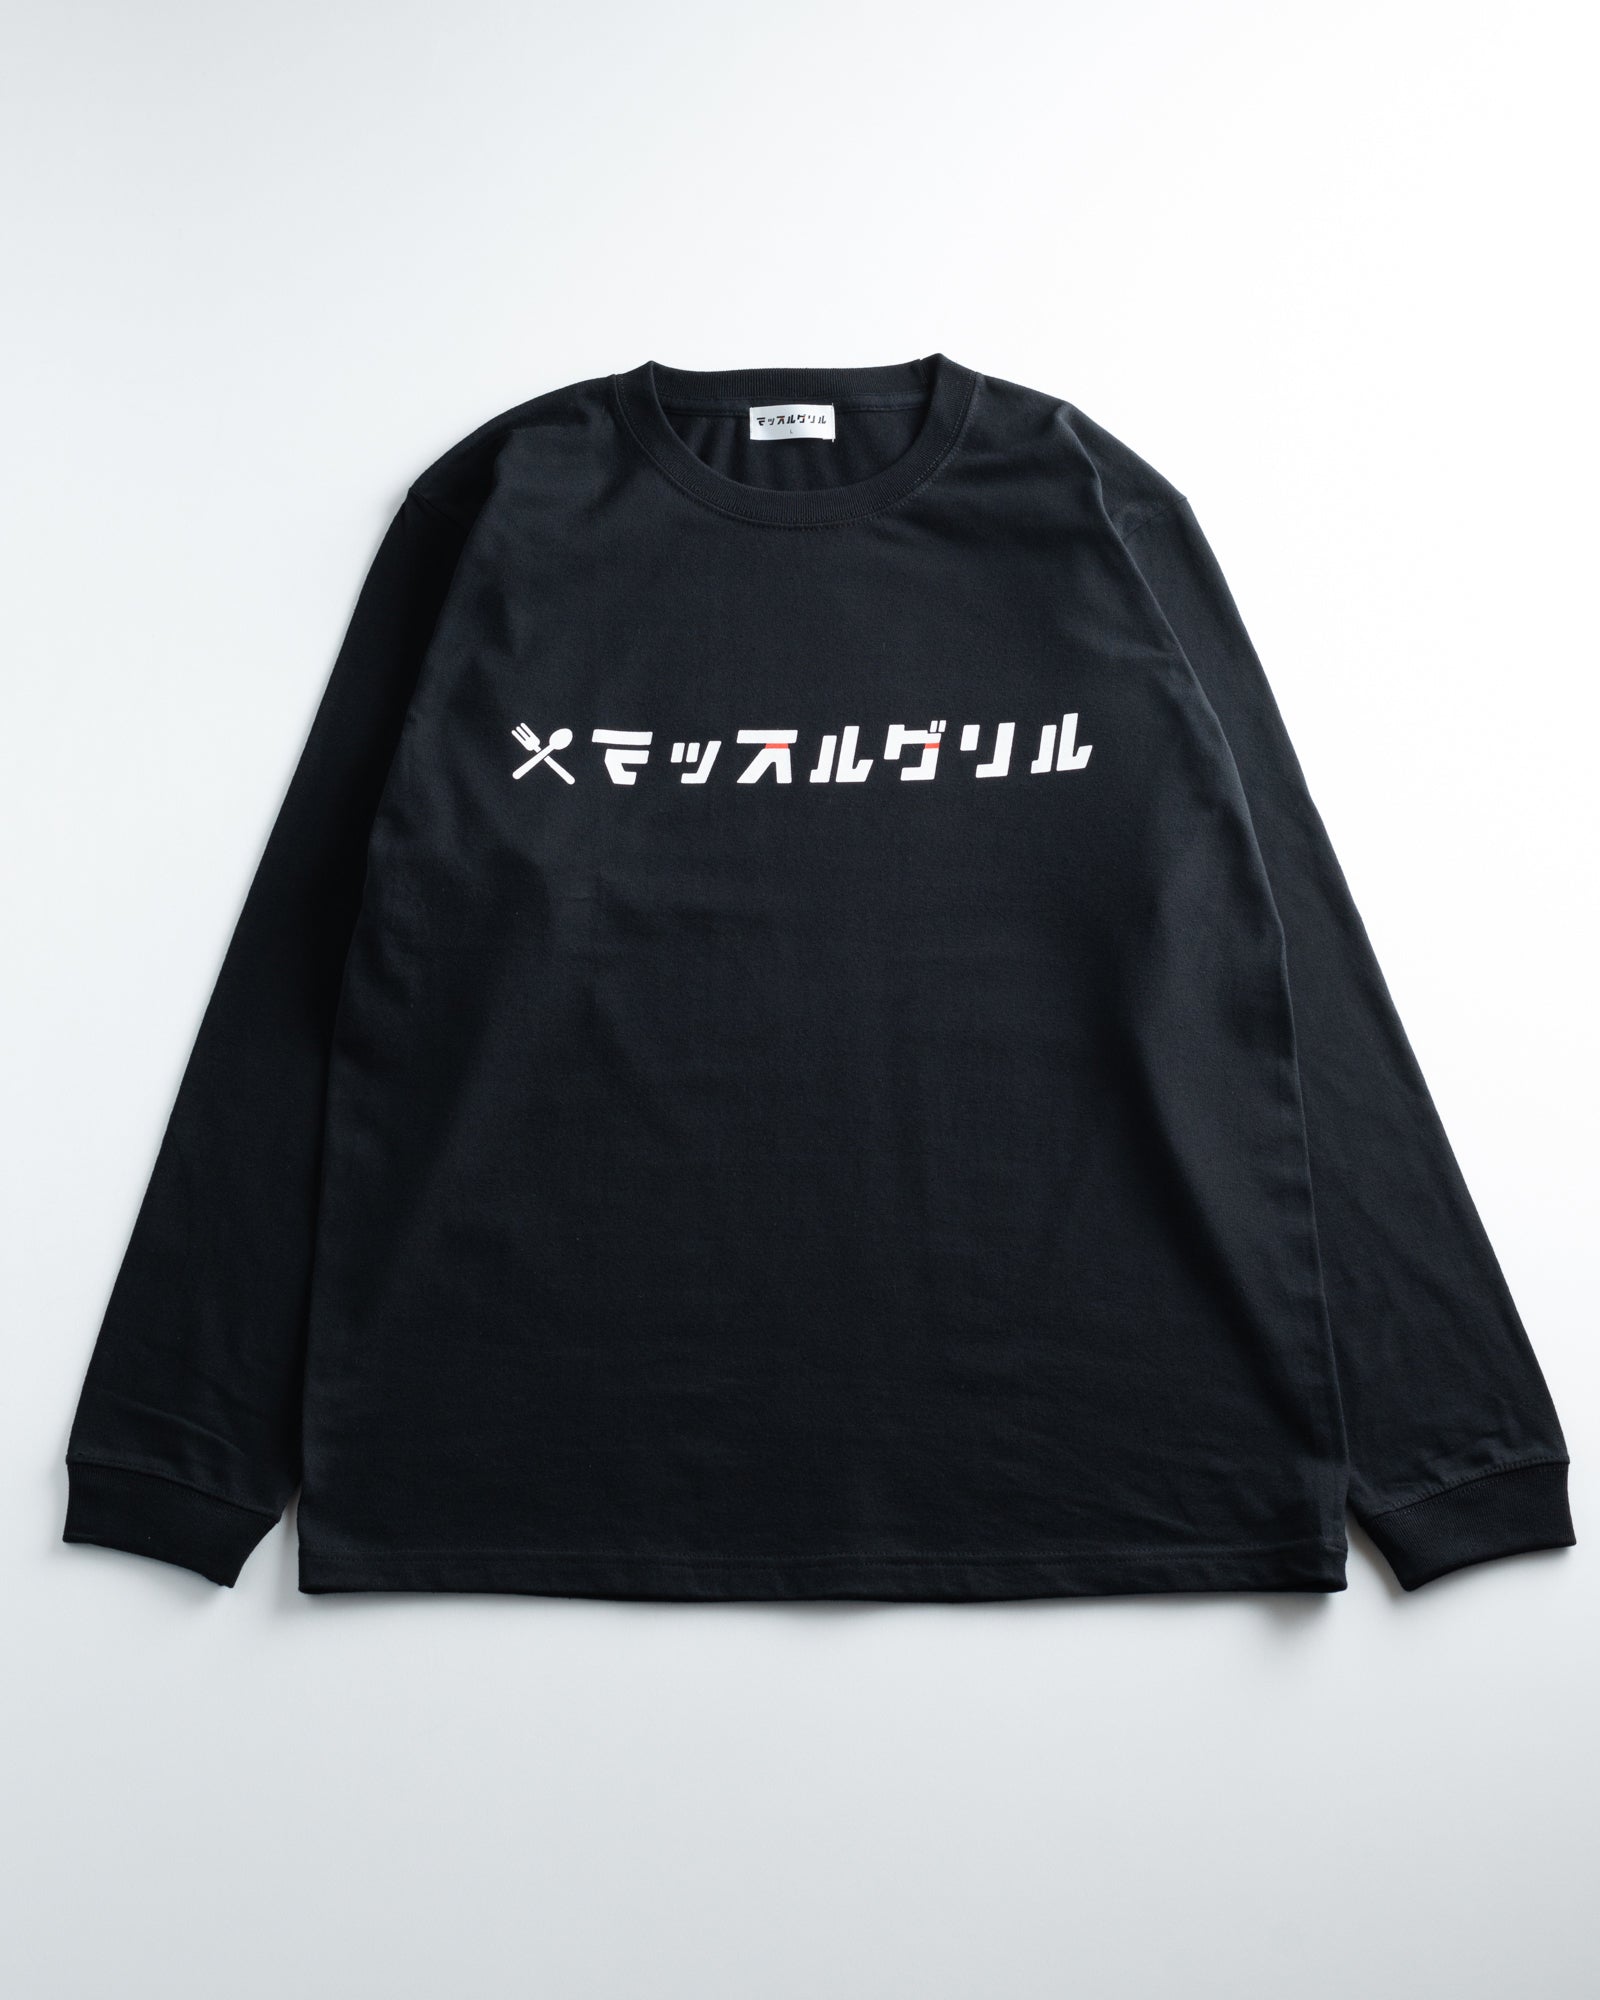 マッスルグリル オリジナルロゴ ロングTシャツ・ブラック